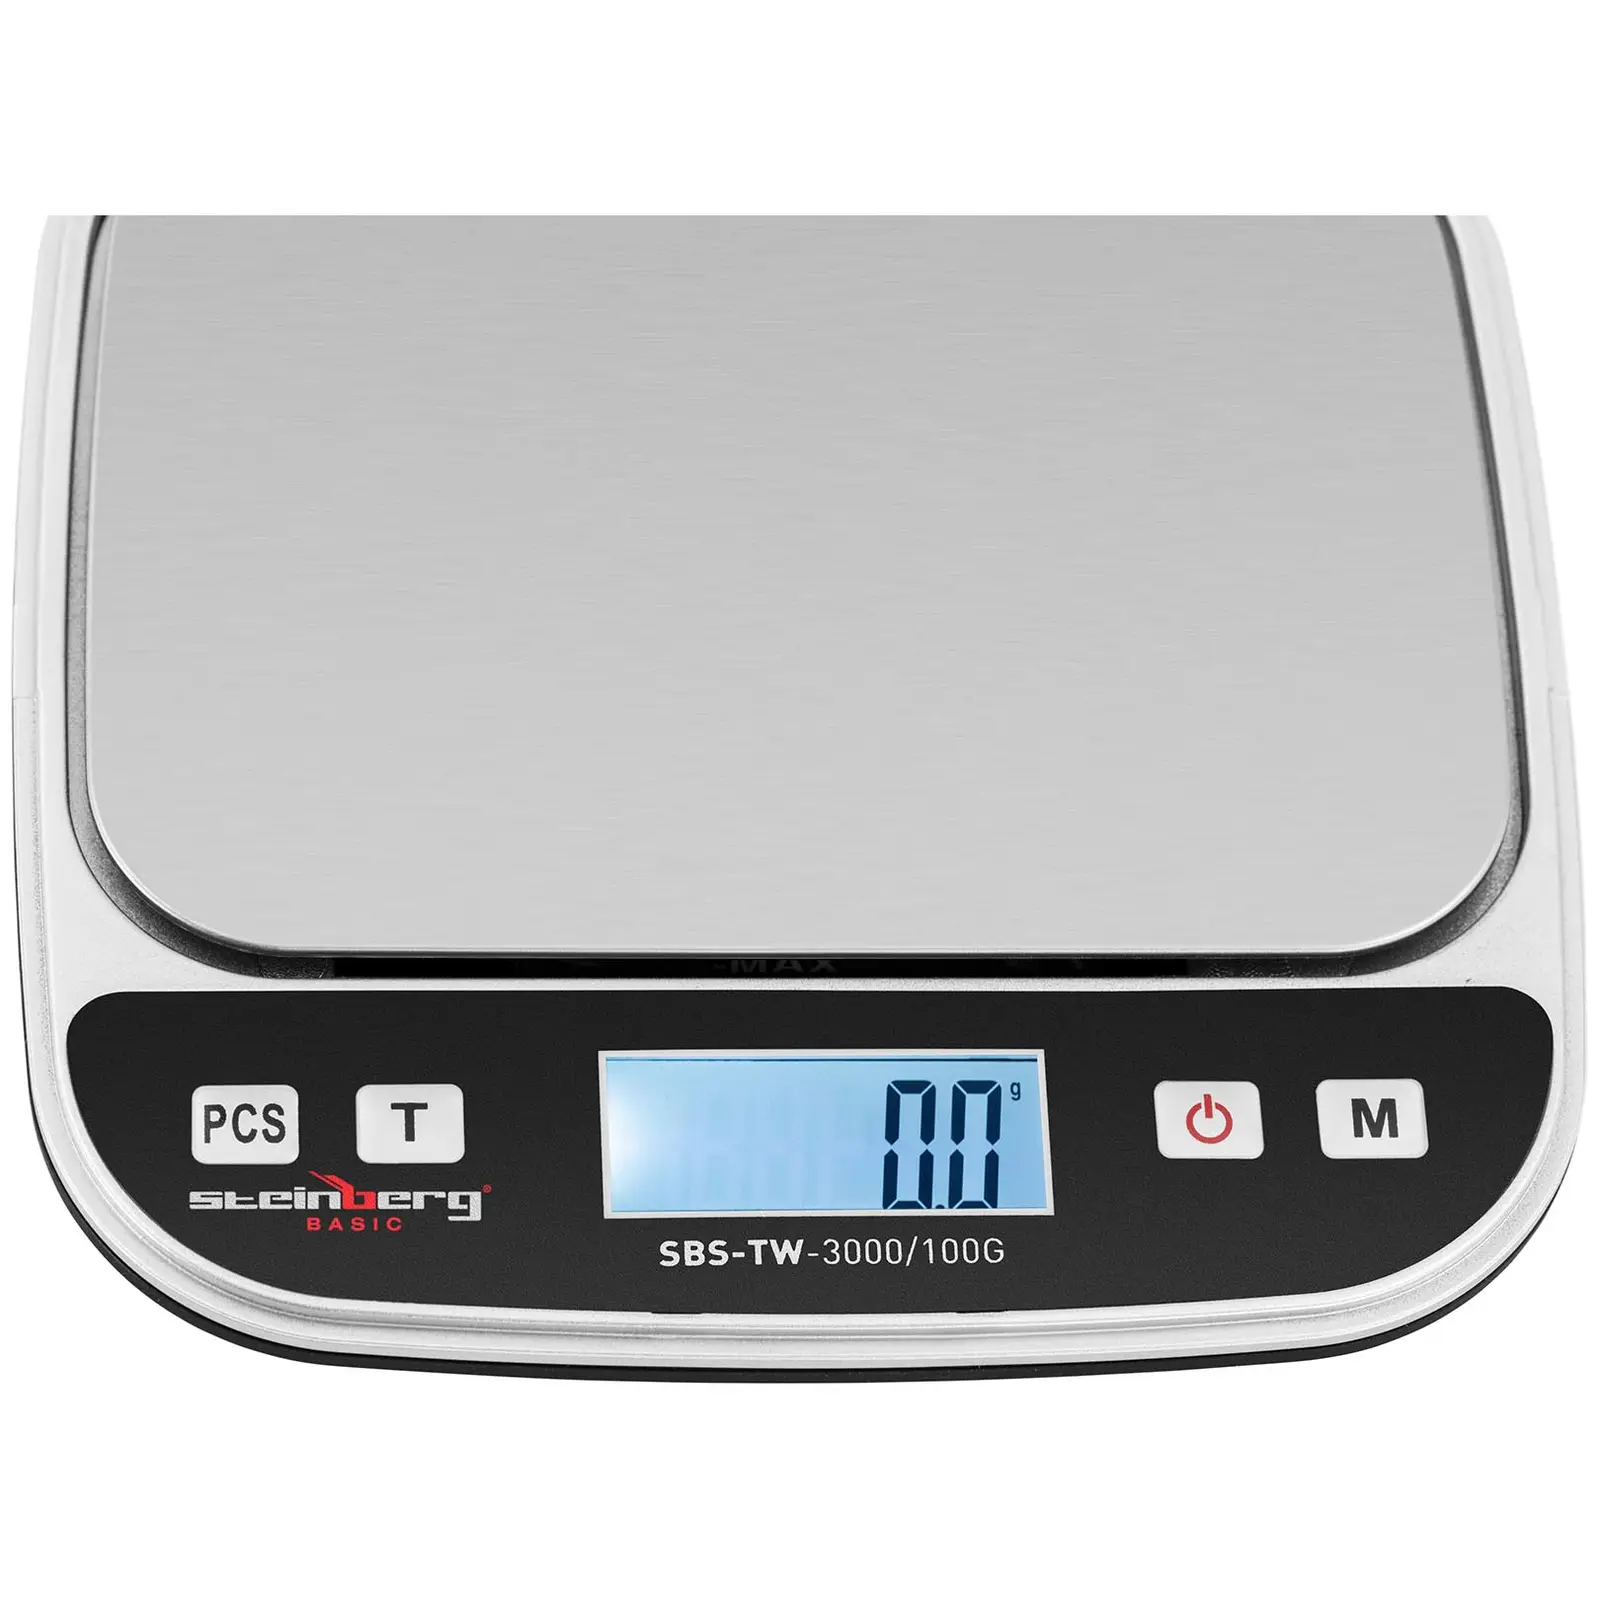 Digitális asztali mérleg - 3 kg / 0,1 g